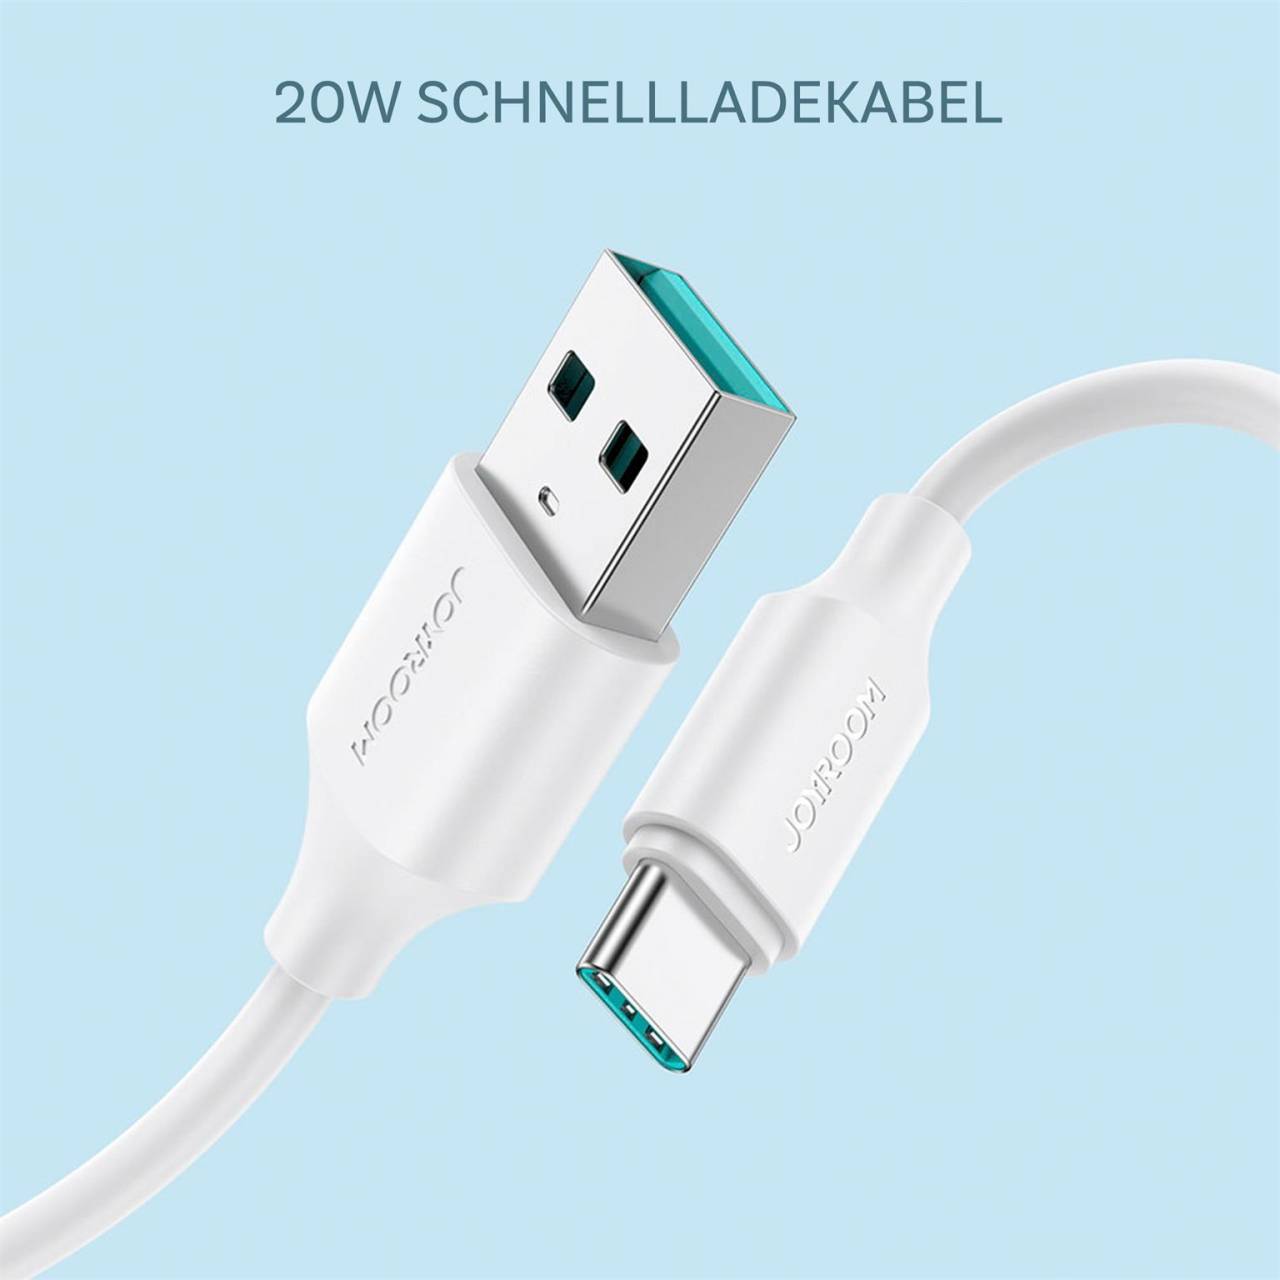 Joyroom Ladekabel – USB-A auf USB-C für Smartphones und andere Geräte, Schnellladekabel 3A, Länge 0,25 m